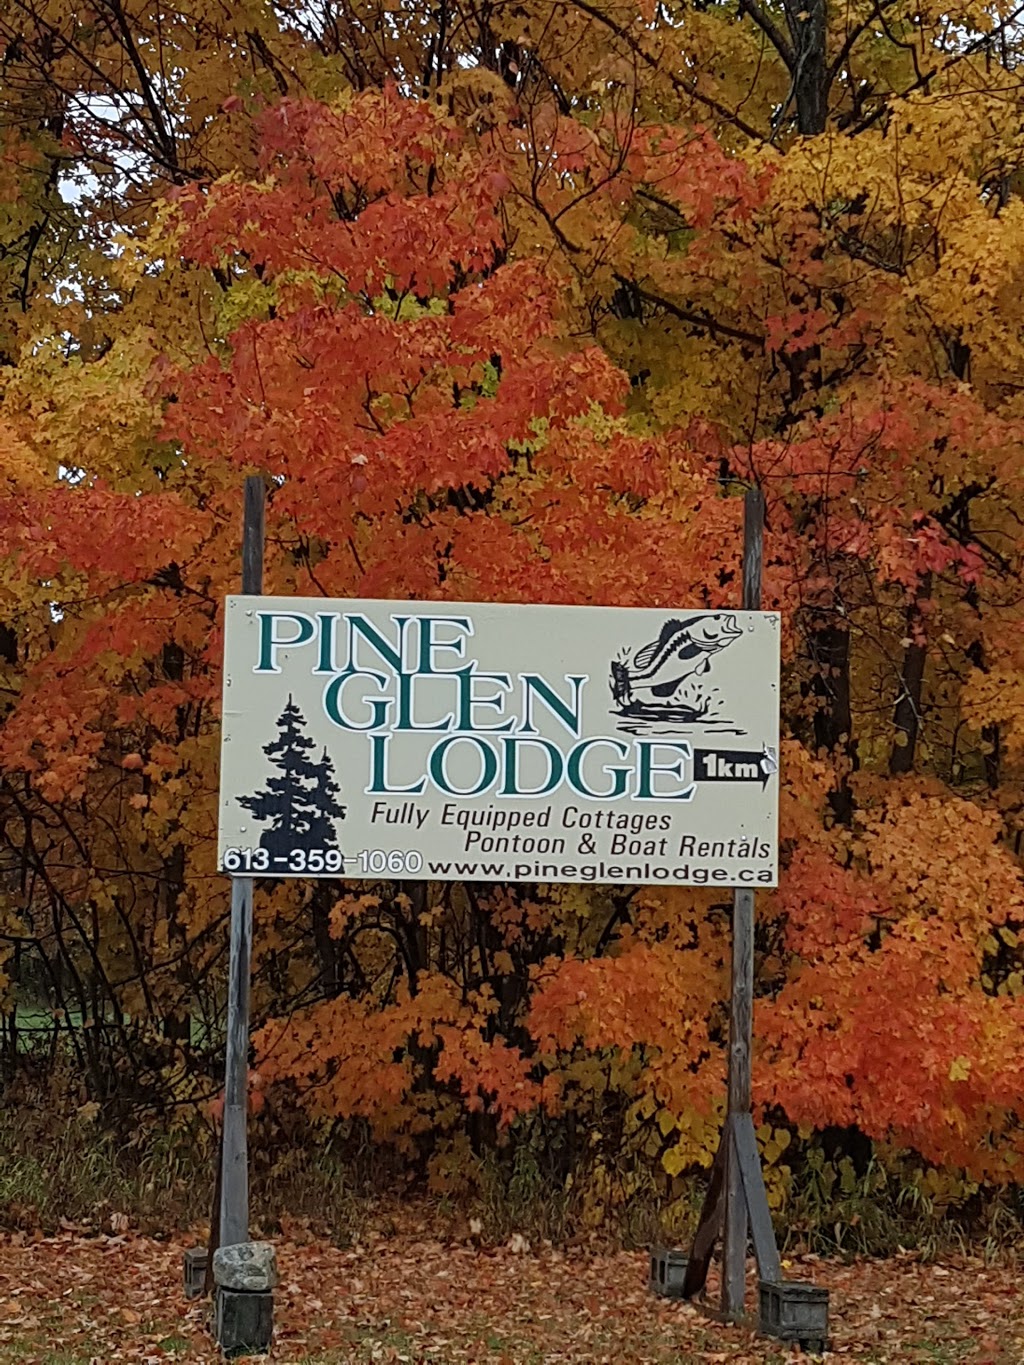 Pine Glen Lodge | lodging | 236 Pine Glen Rd, Elgin, ON K0G 1E0, Canada | 6133591060 OR +1 613-359-1060